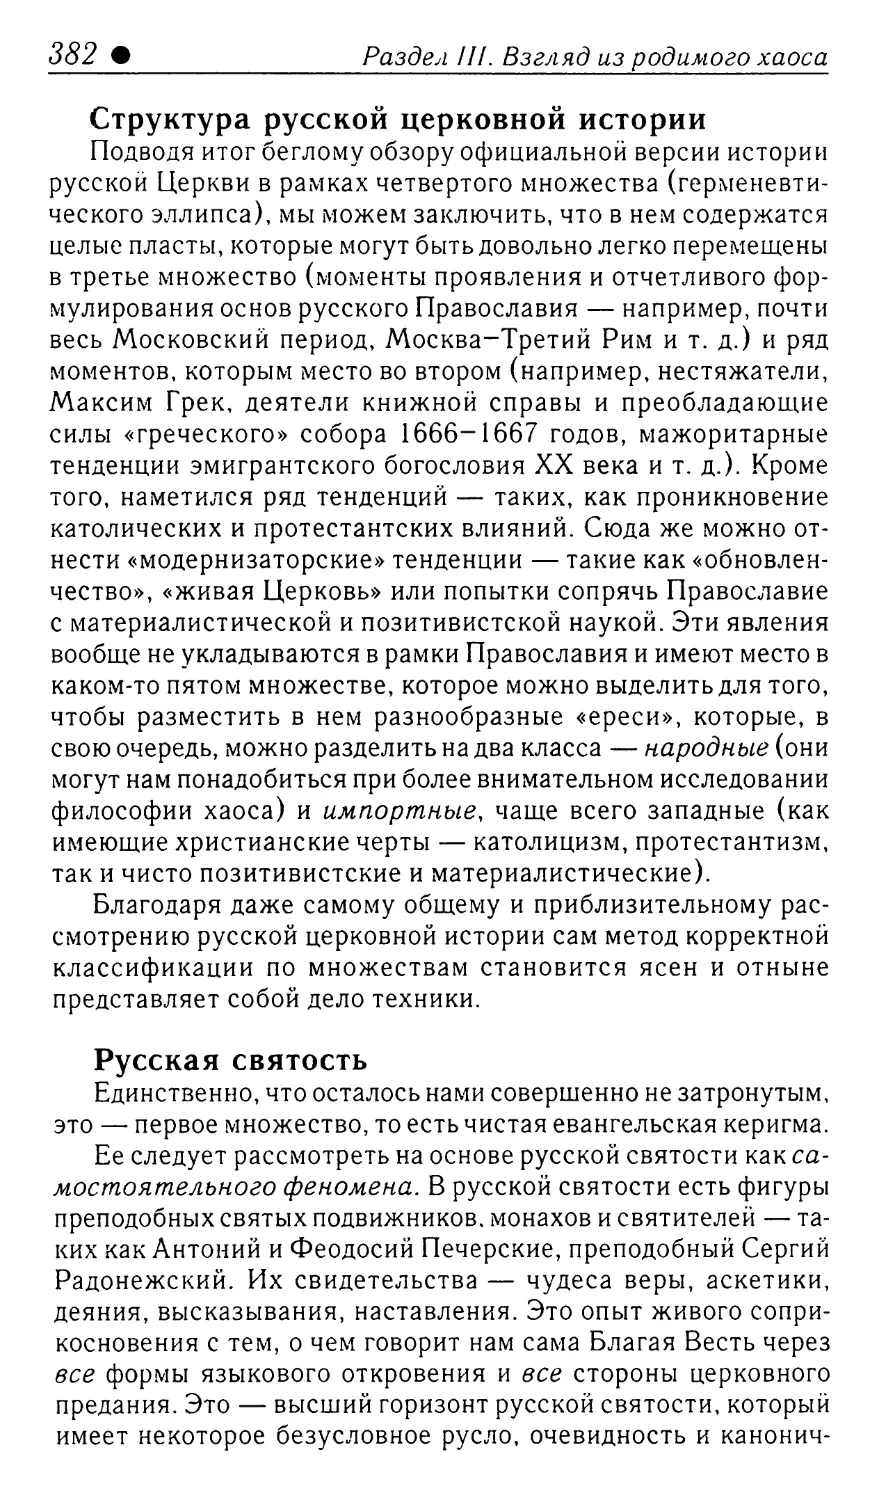 Структура русской церковной истории
Русская святость